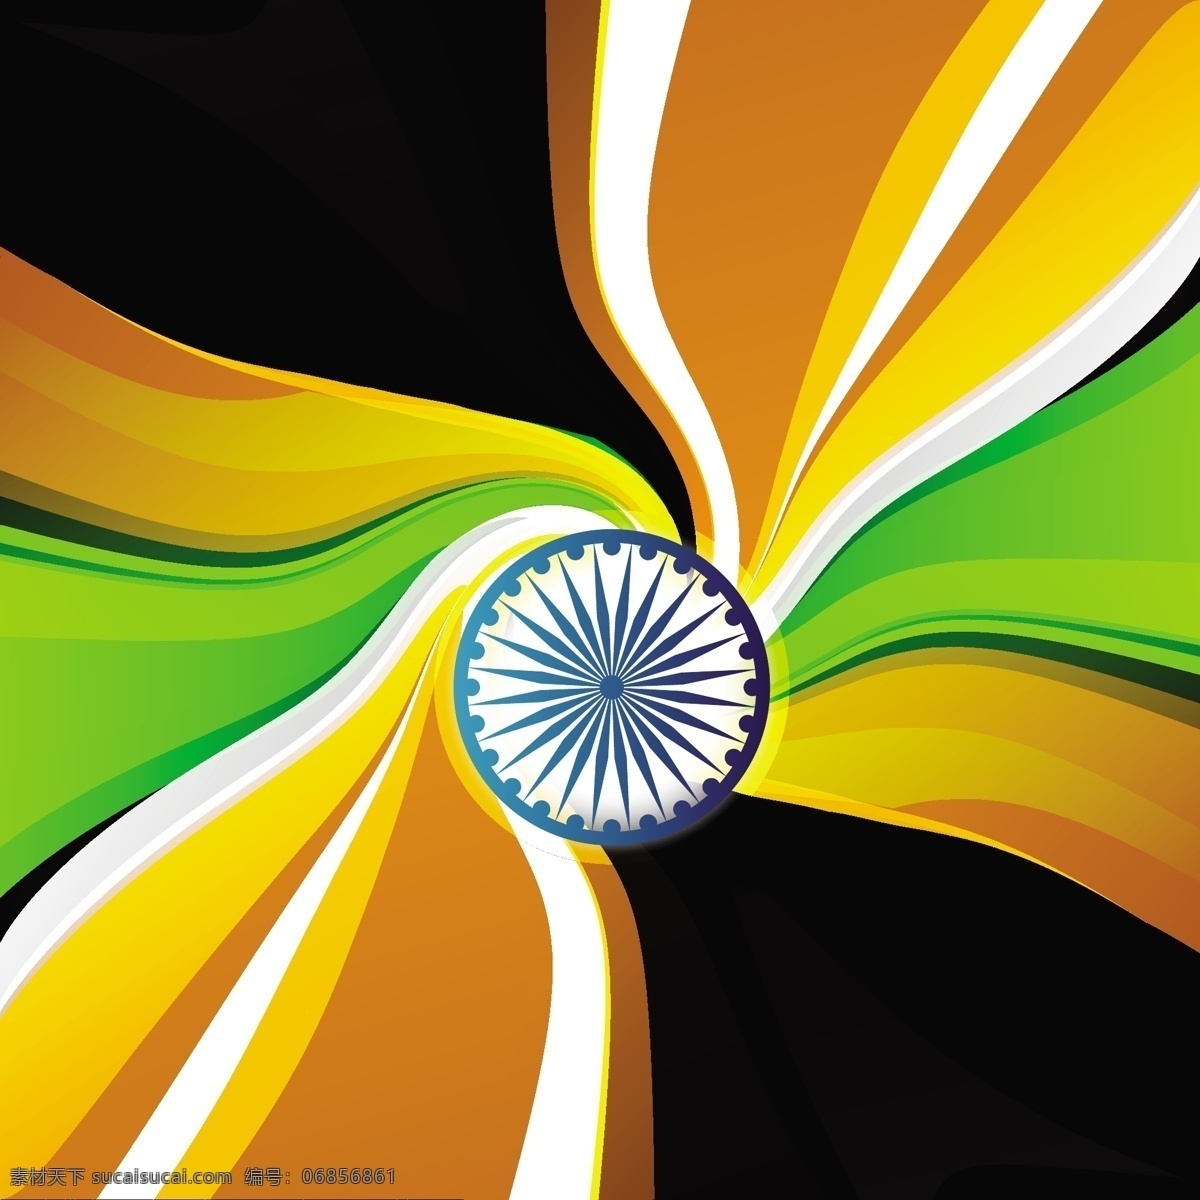 印度 国旗 三 色 波浪 背景 抽象 节日 车轮 和平 印度国旗 独立日 国家 自由 日 政府 爱国 一月 独立 黑色